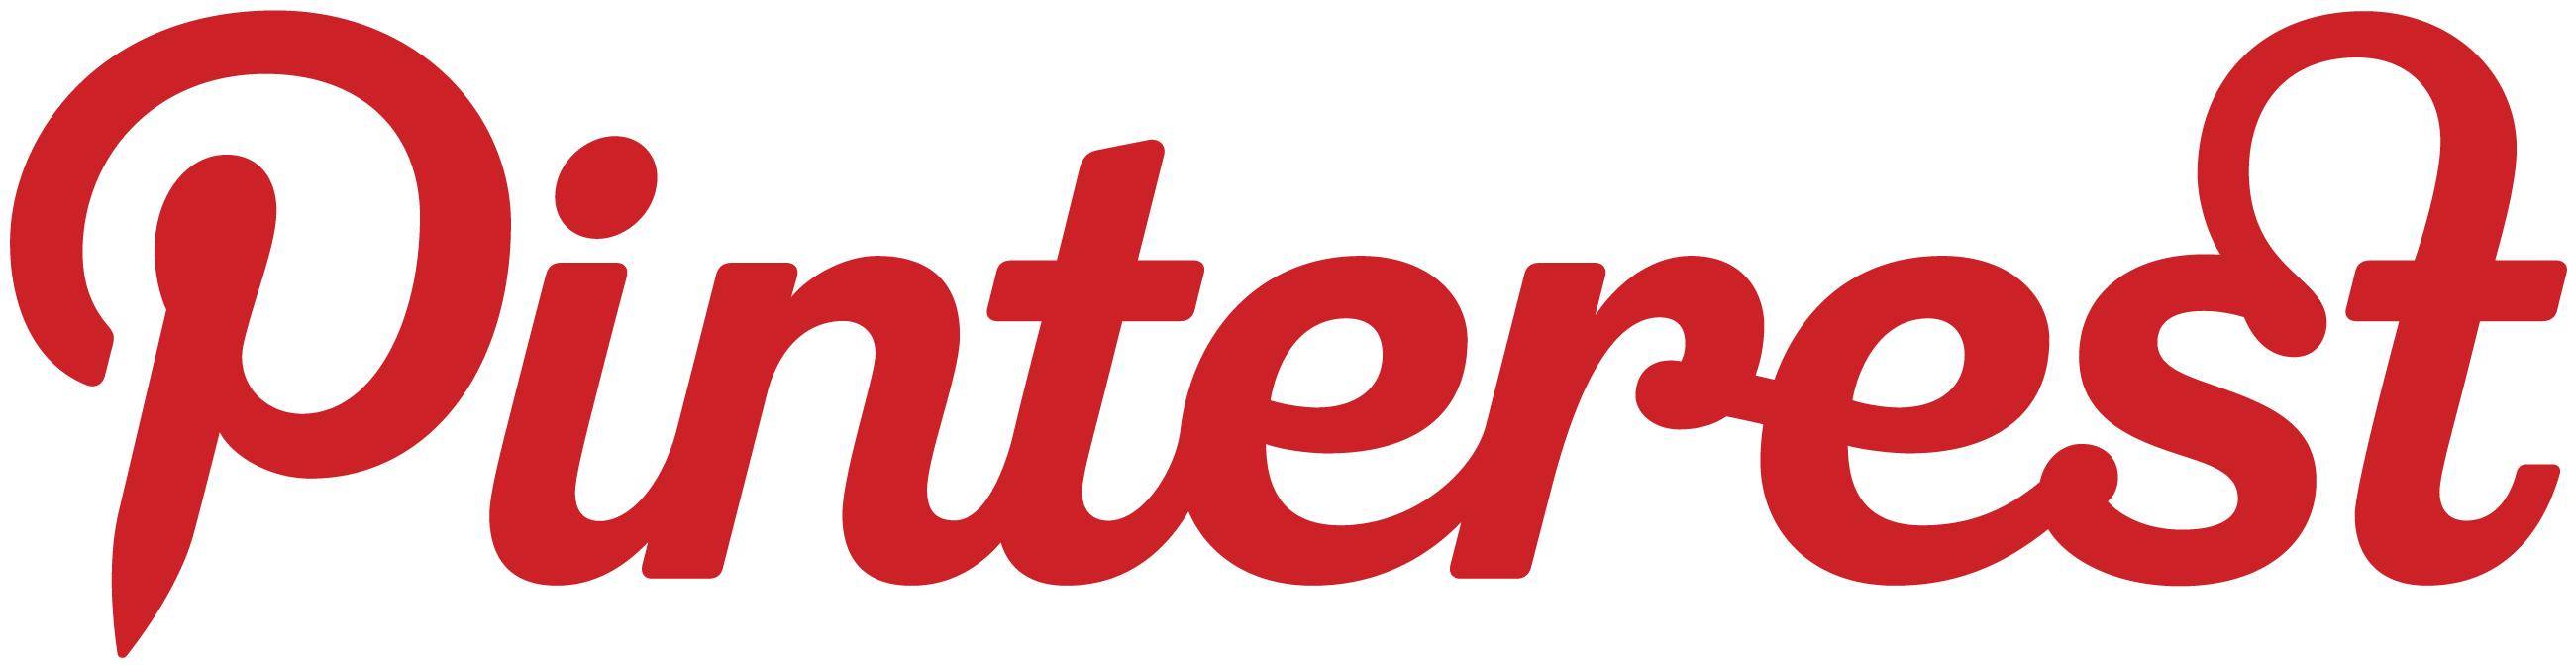 Pintrst Logo - pinterest logo red